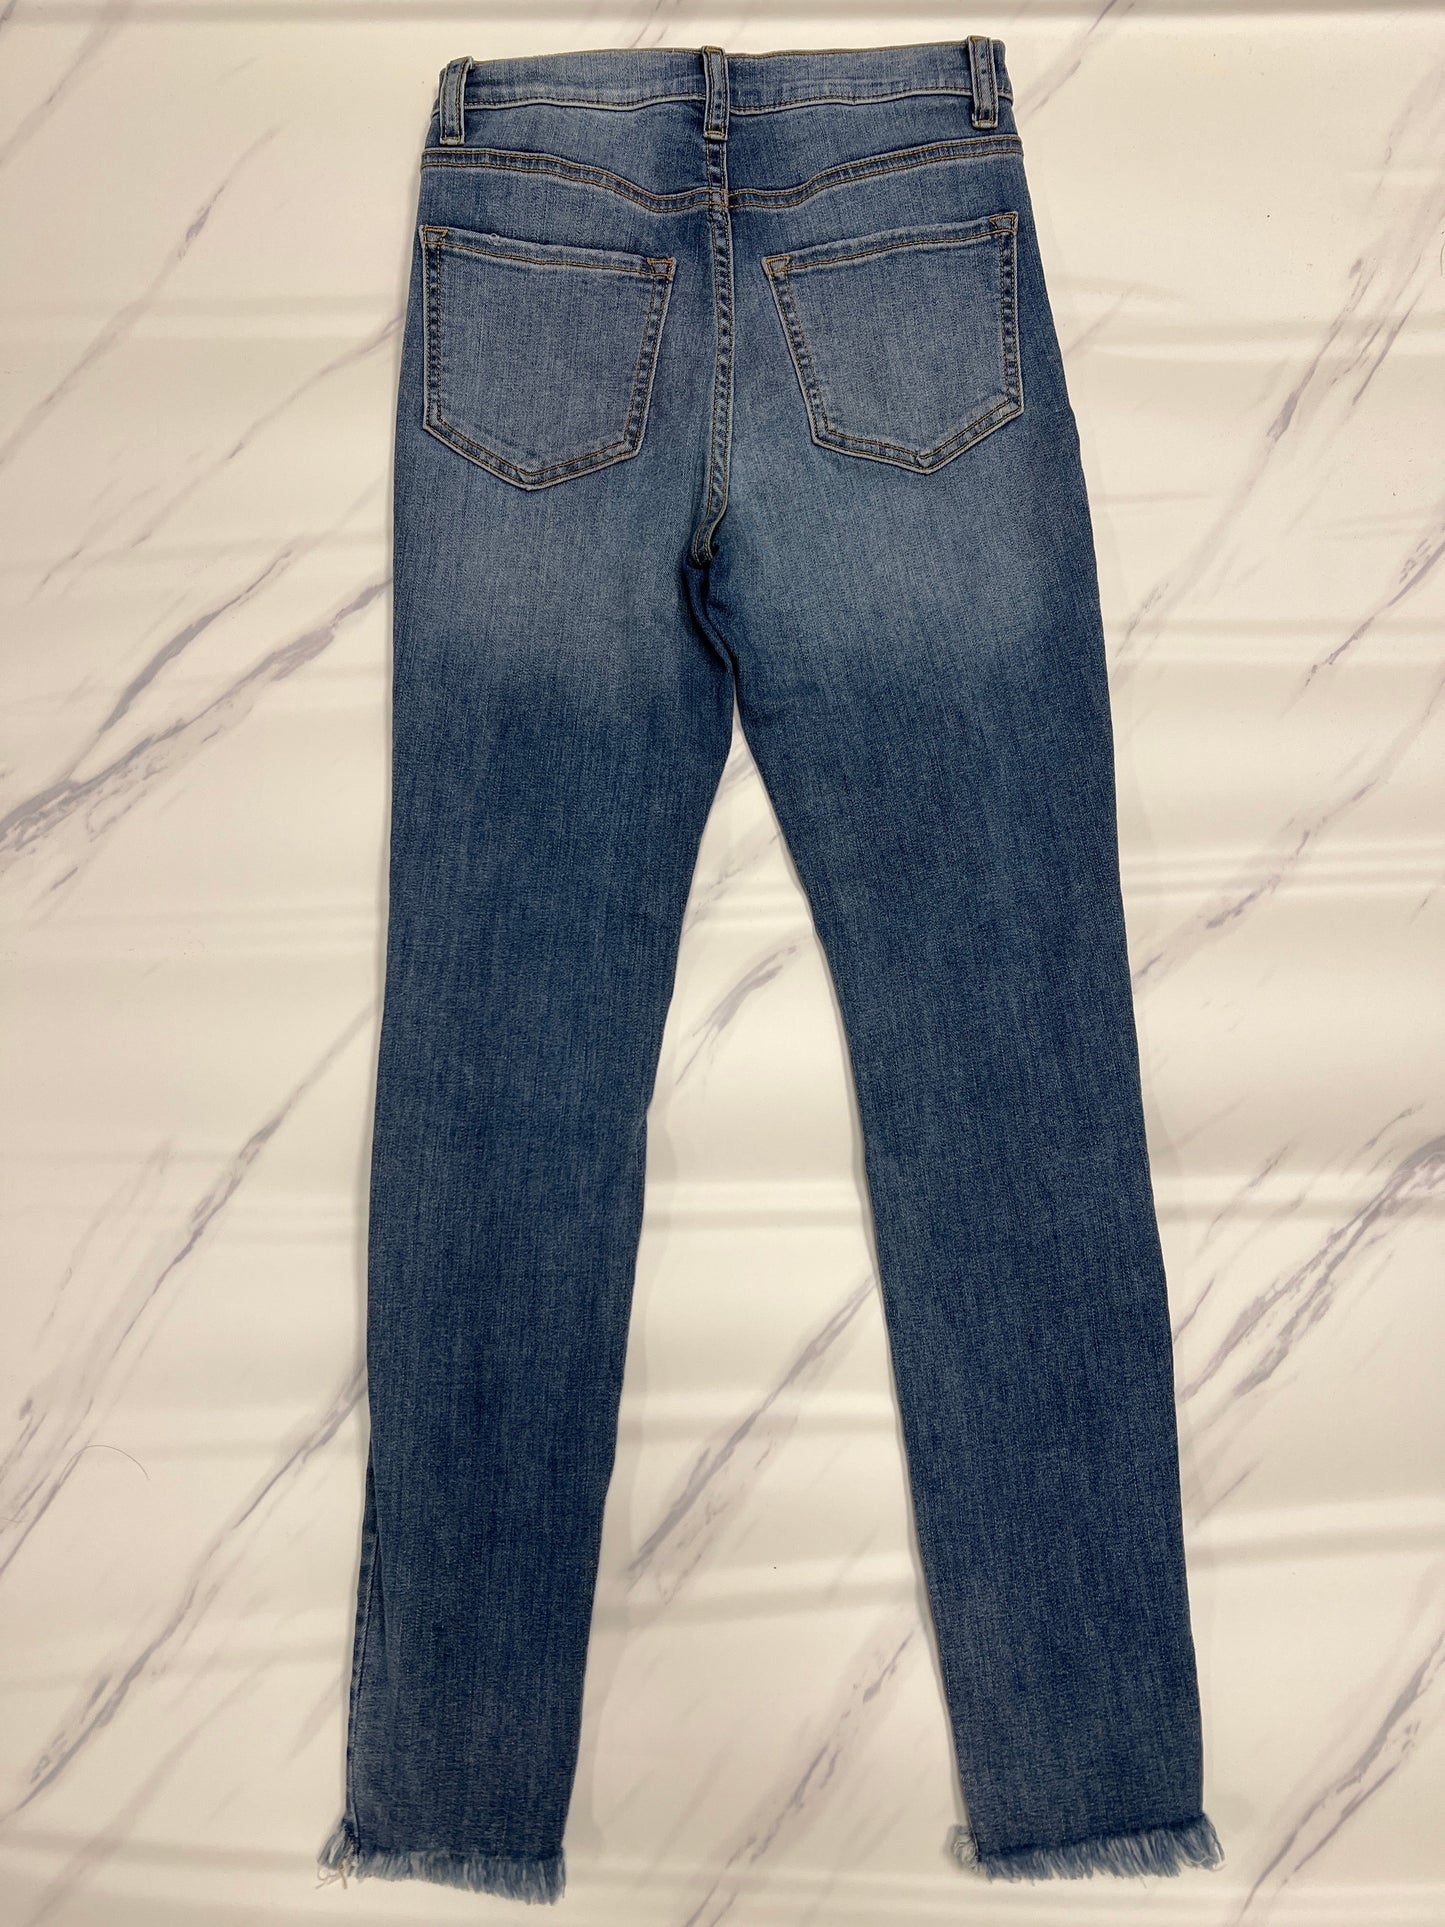 Jeans Skinny By Sneak Peek  Size: 2